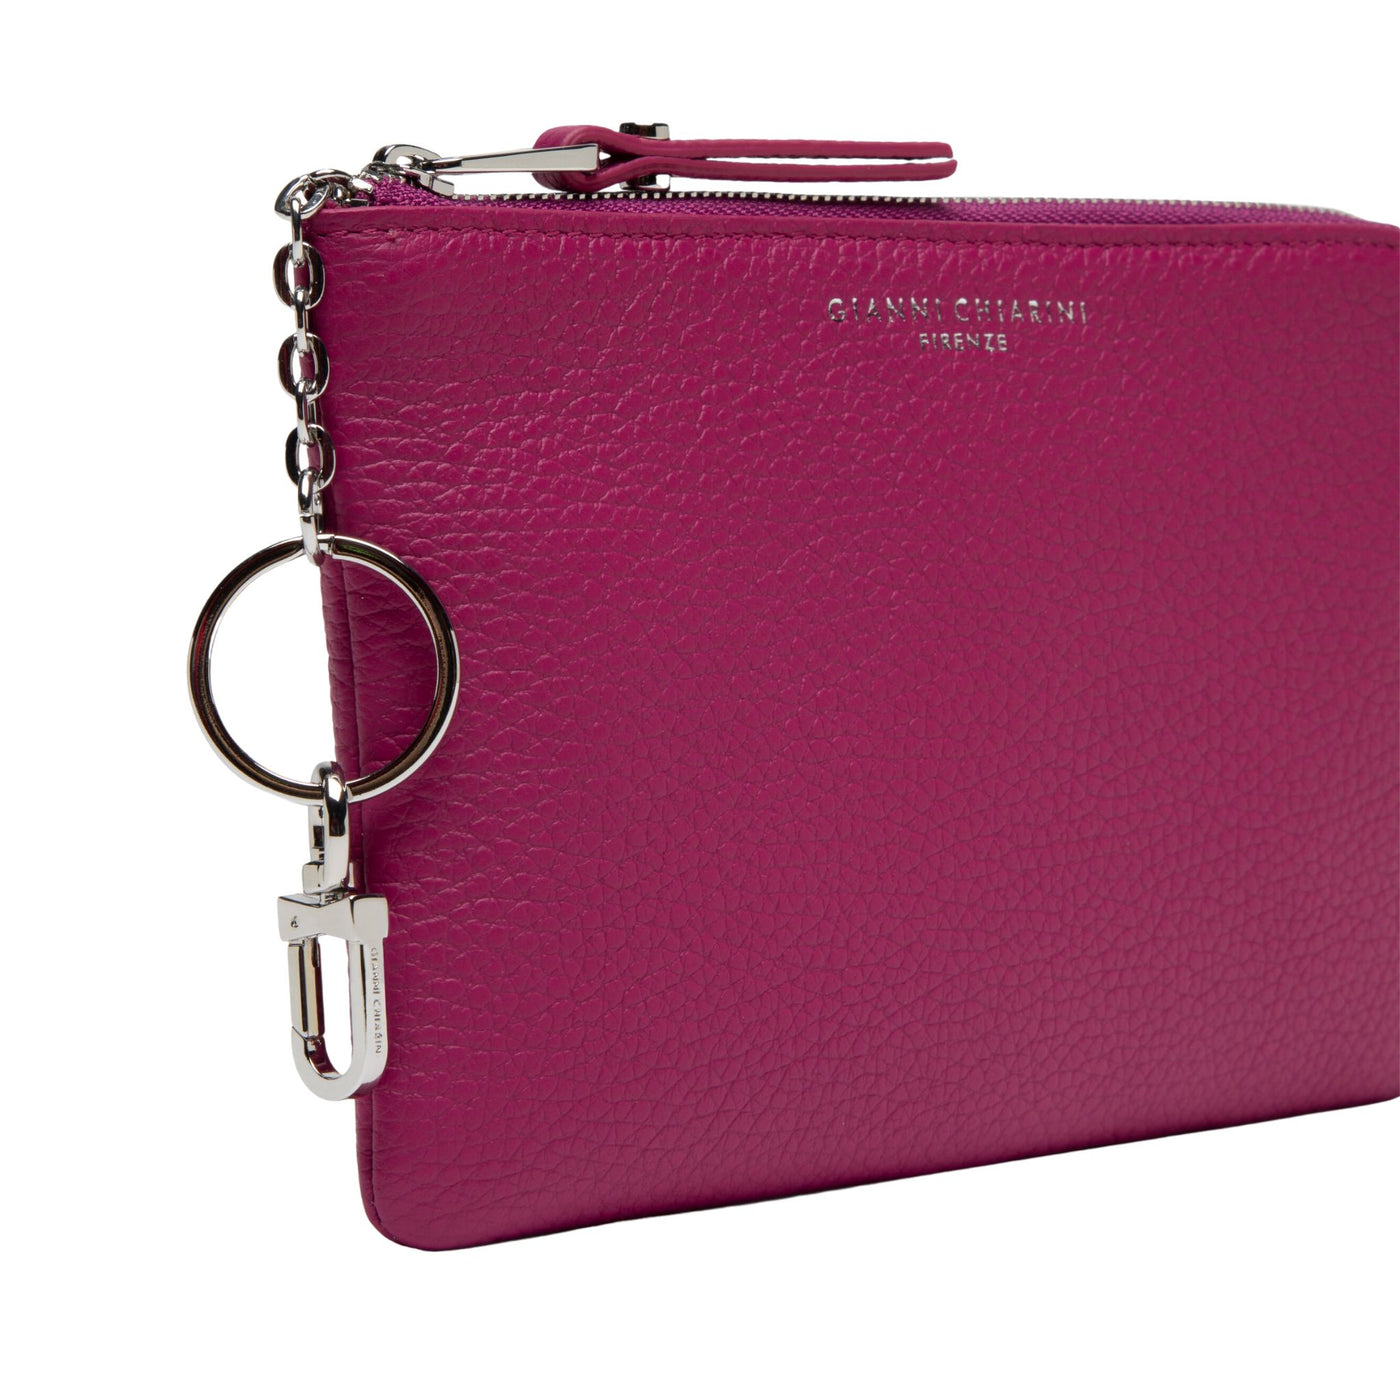 Fuchsia women's wallet with zip